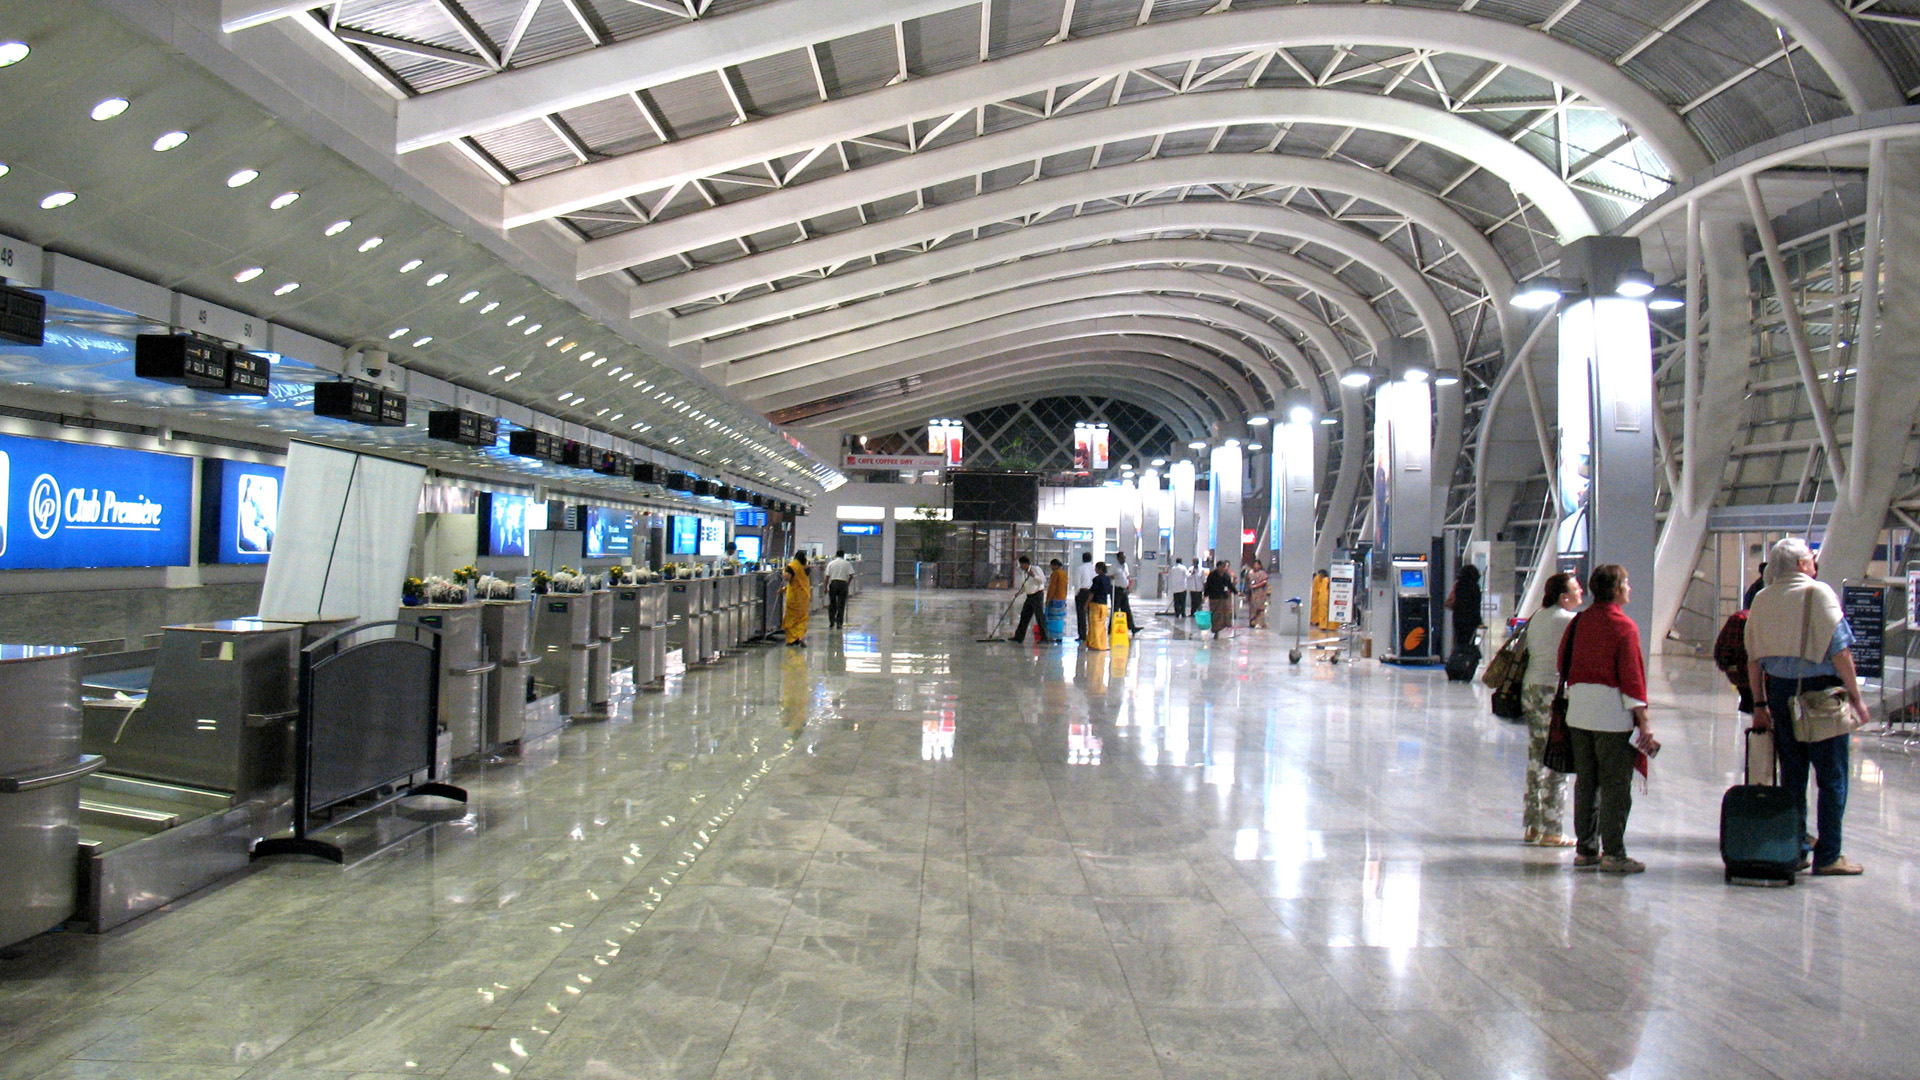 Power BI Report For International Airport